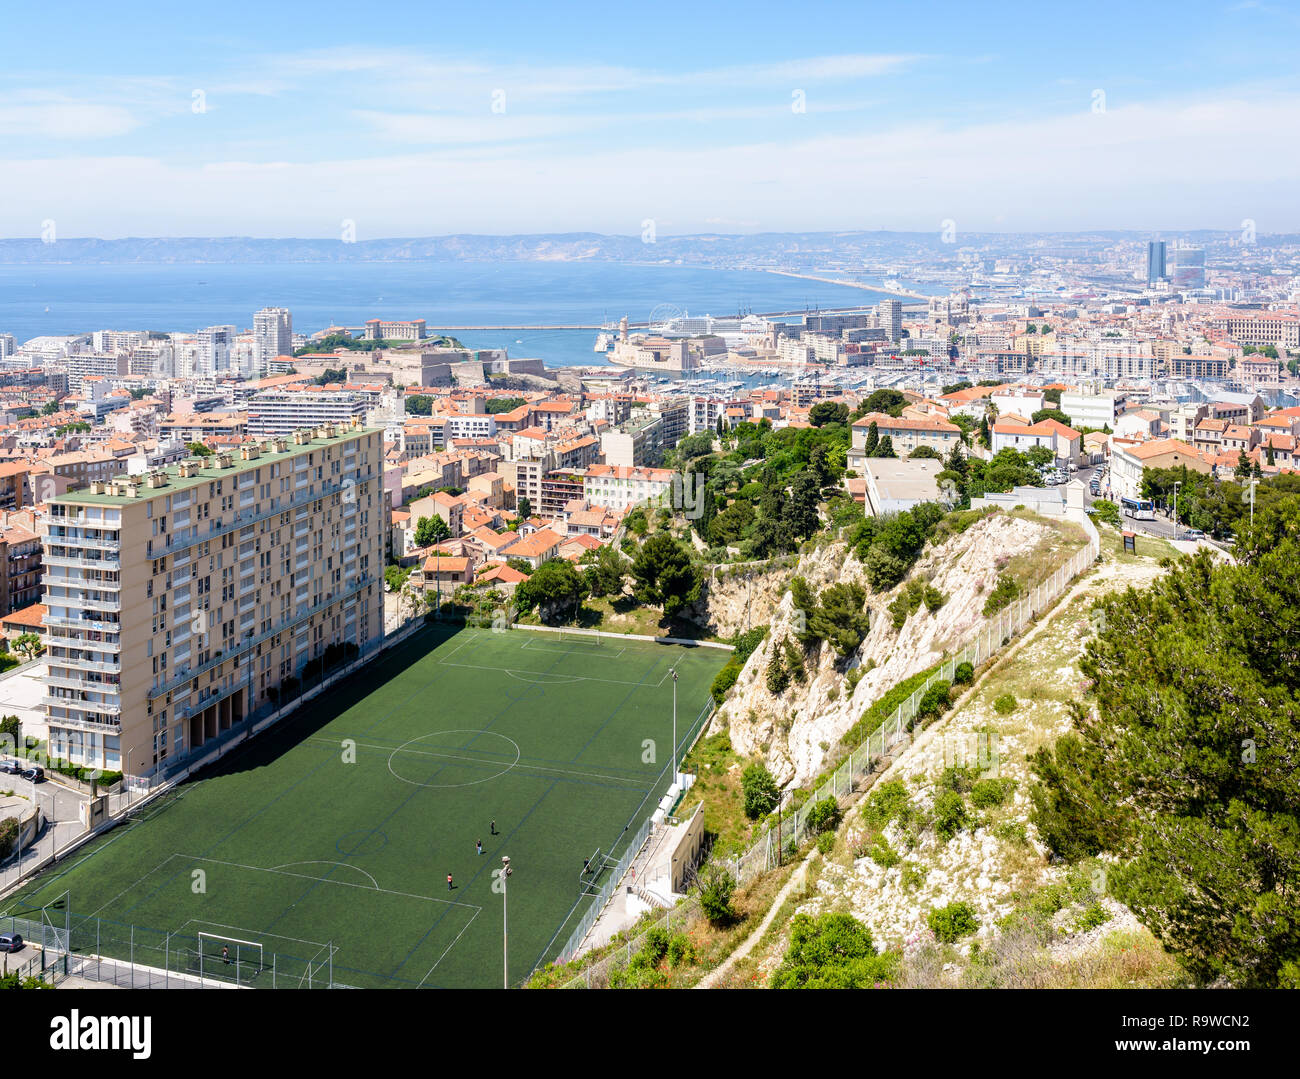 Vue panoramique sur Marseille, France, et le Vieux Port de Notre-Dame de la Garde avec le Di Giovanni terrain de football au premier plan. Banque D'Images